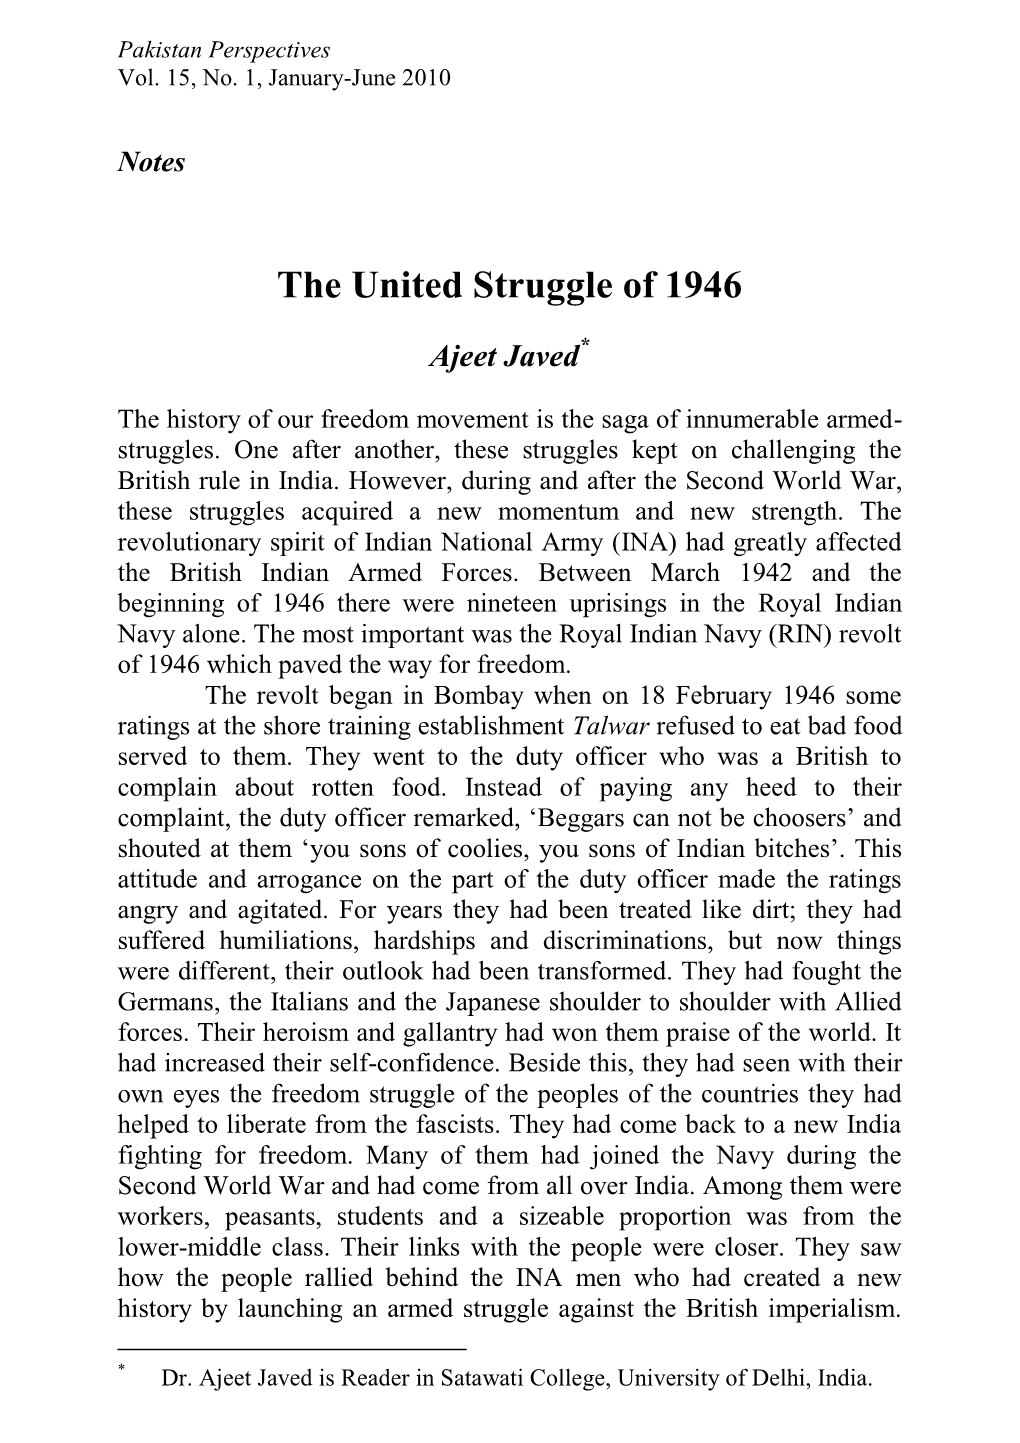 The United Struggle of 1946